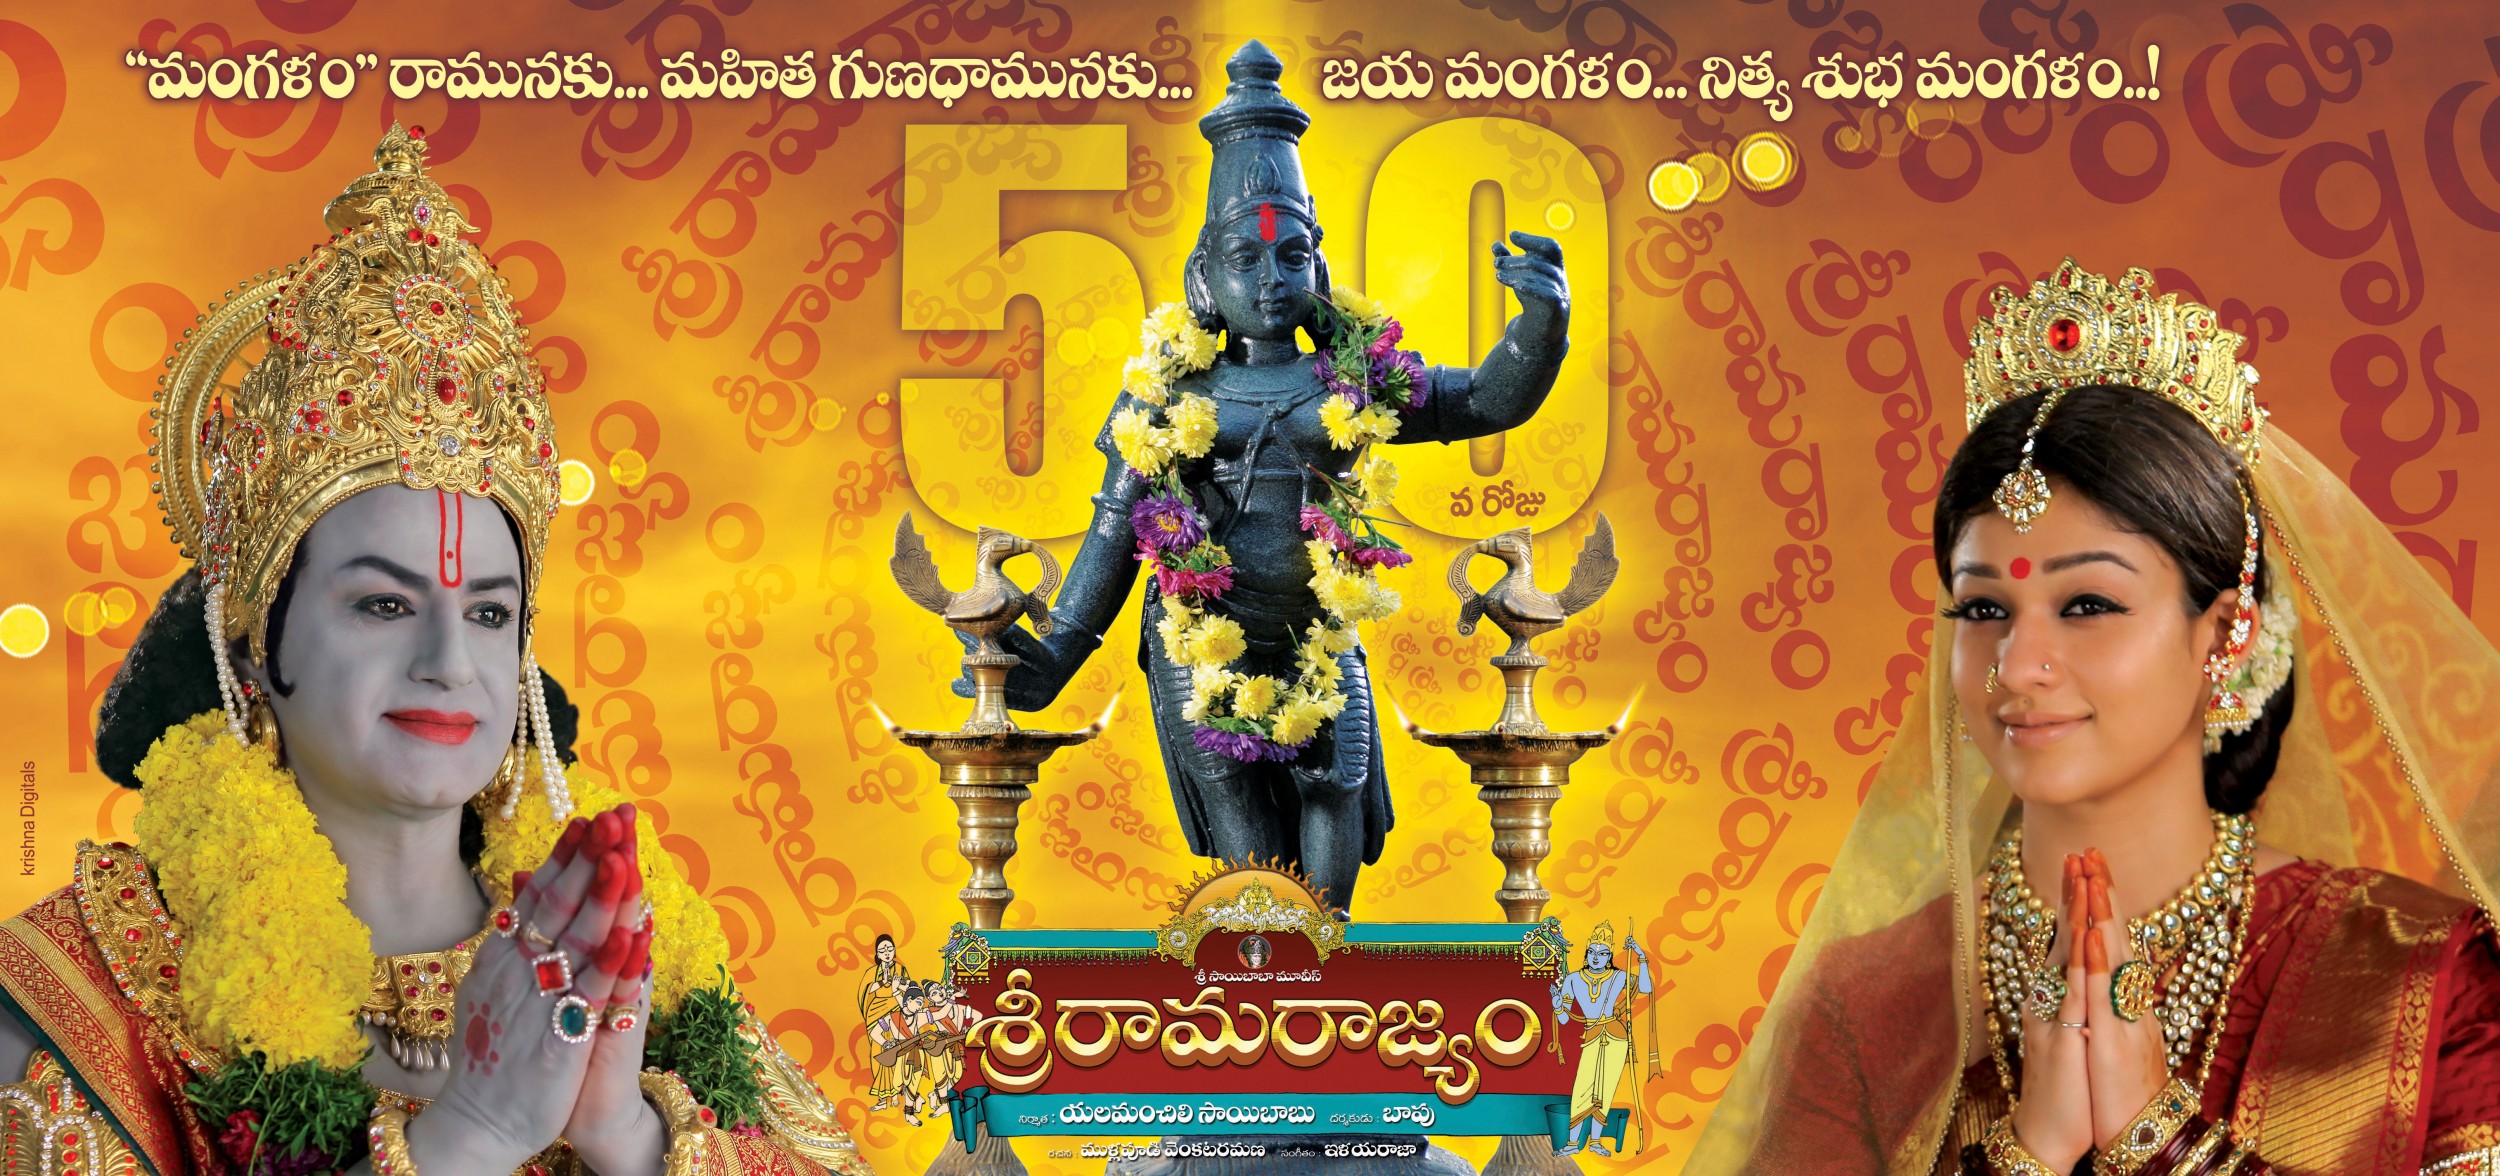 Mega Sized Movie Poster Image for Sri Rama Rajyam (#1 of 10)